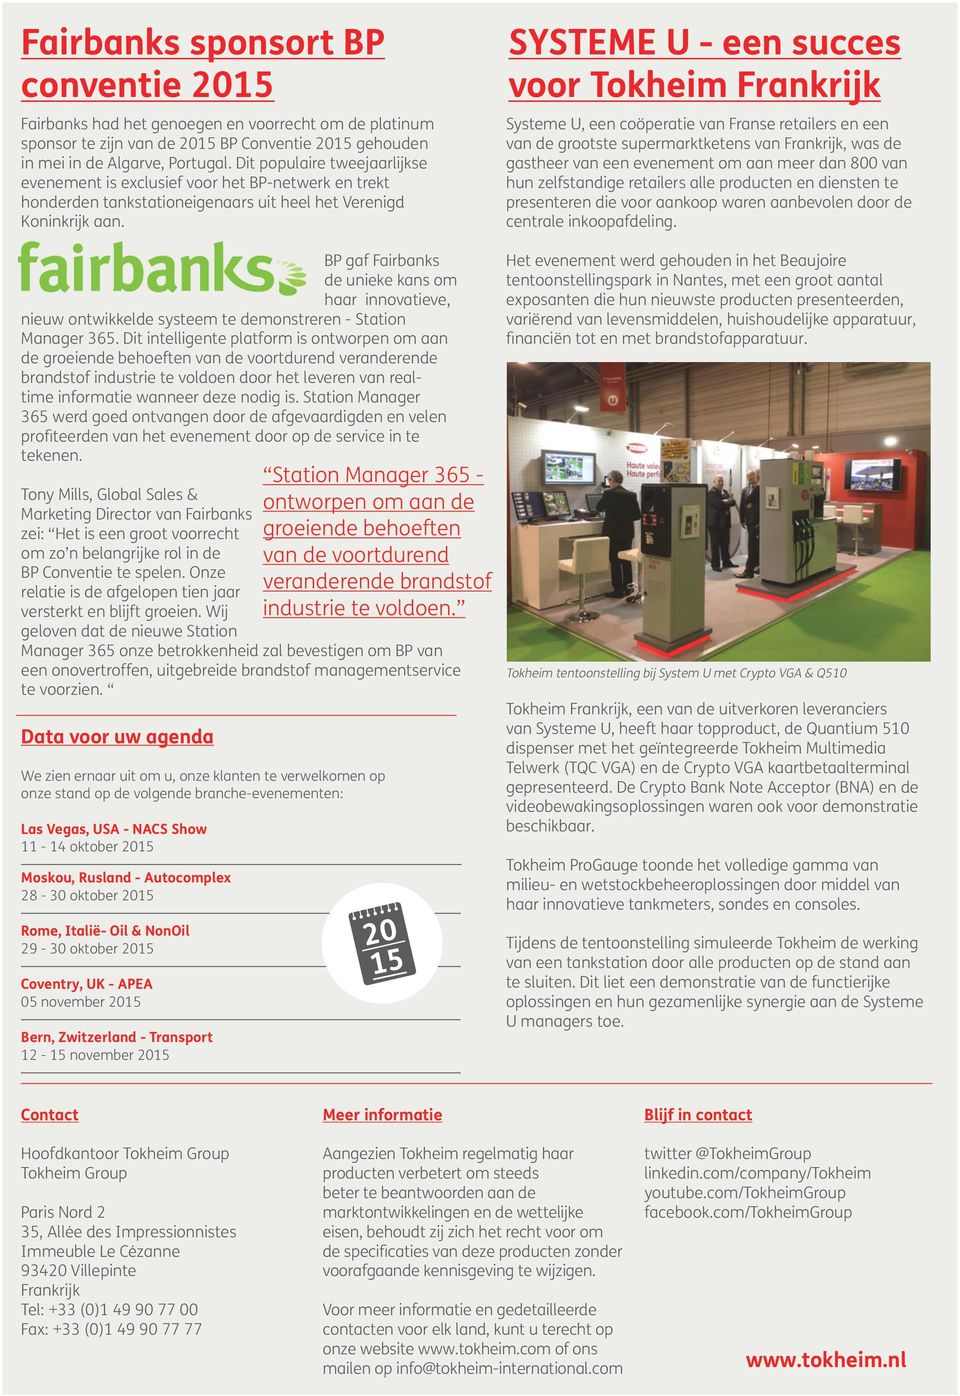 BP gaf Fairbanks de unieke kans om haar innovatieve, nieuw ontwikkelde systeem te demonstreren - Station Manager 365.